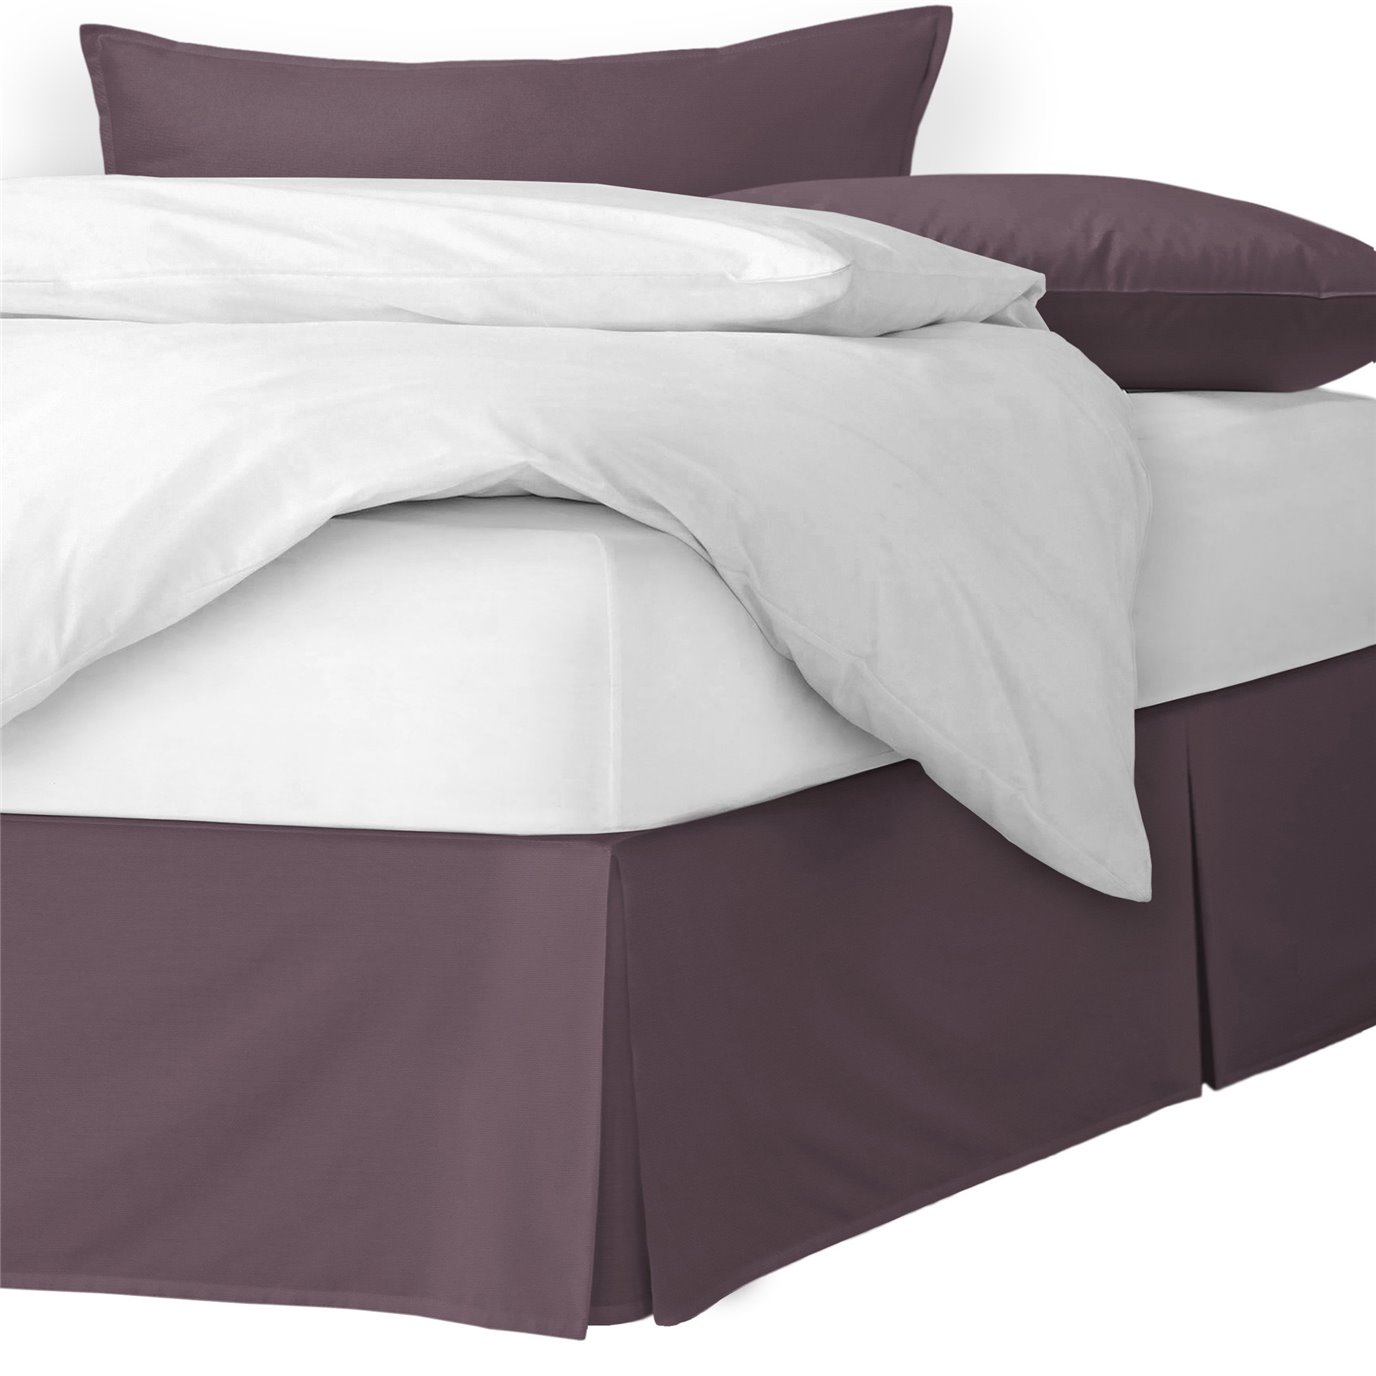 Braxton Purple Grape Platform Bed Skirt - Size Queen 18" Drop